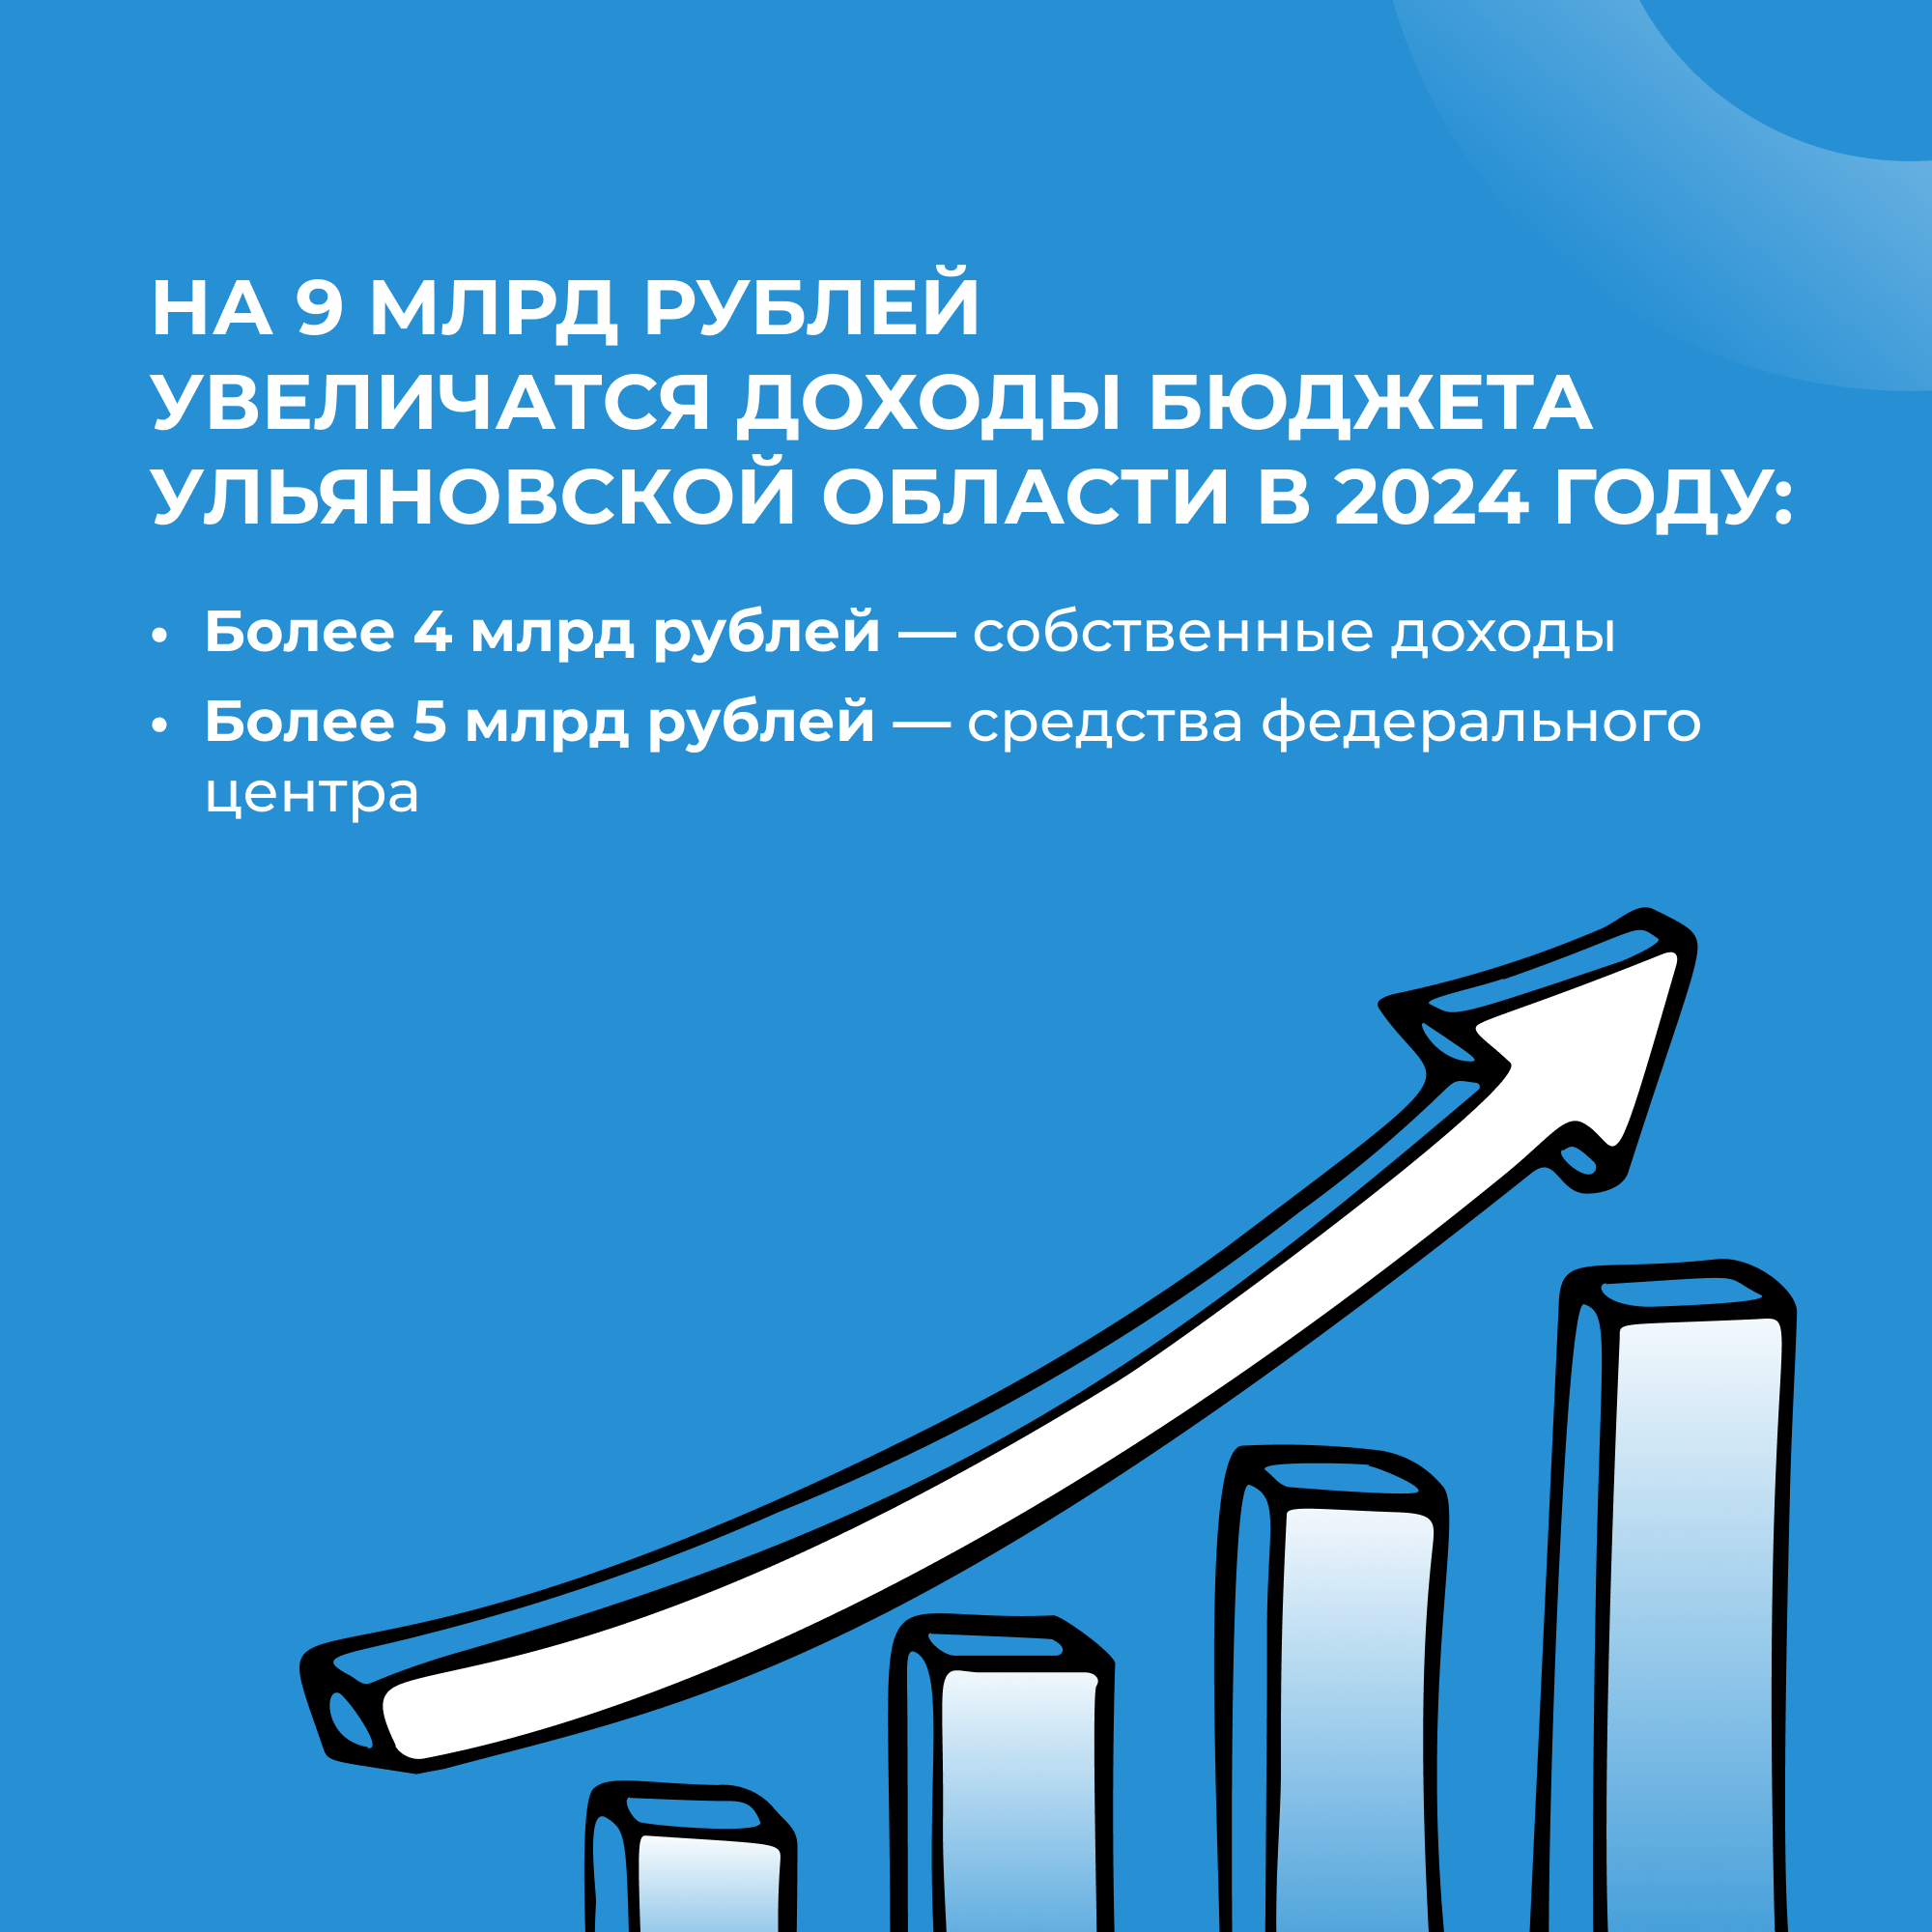 Допдоходы регионального бюджета в размере 9 млрд рублей направят на социально значимые сферы.